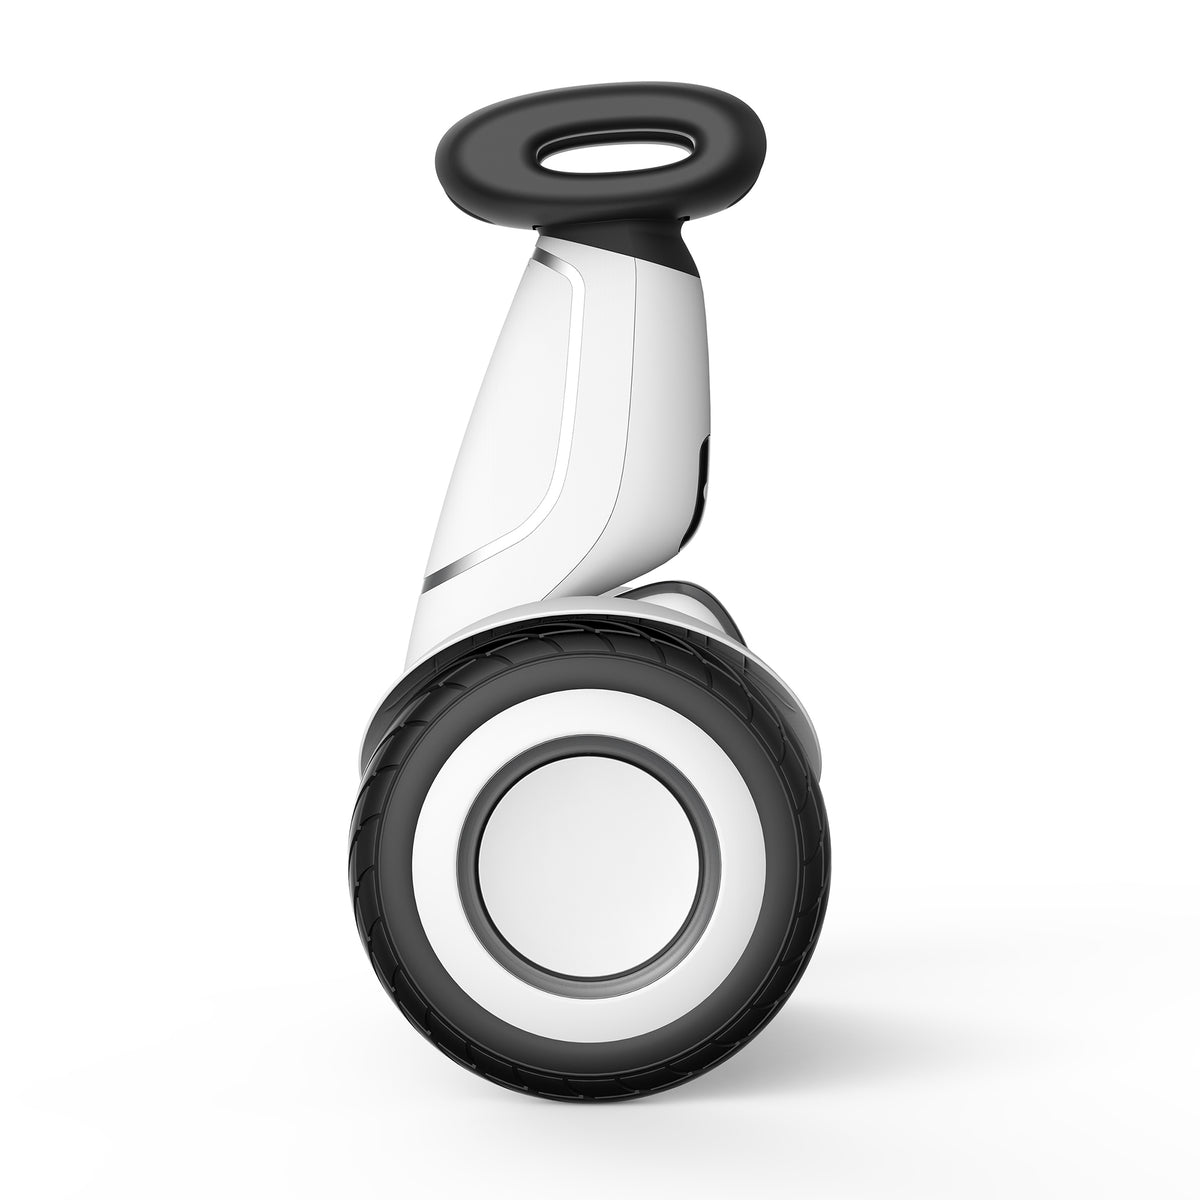 Segway Ninebot S-Plus Smart Self-Balancing Electric Transporter